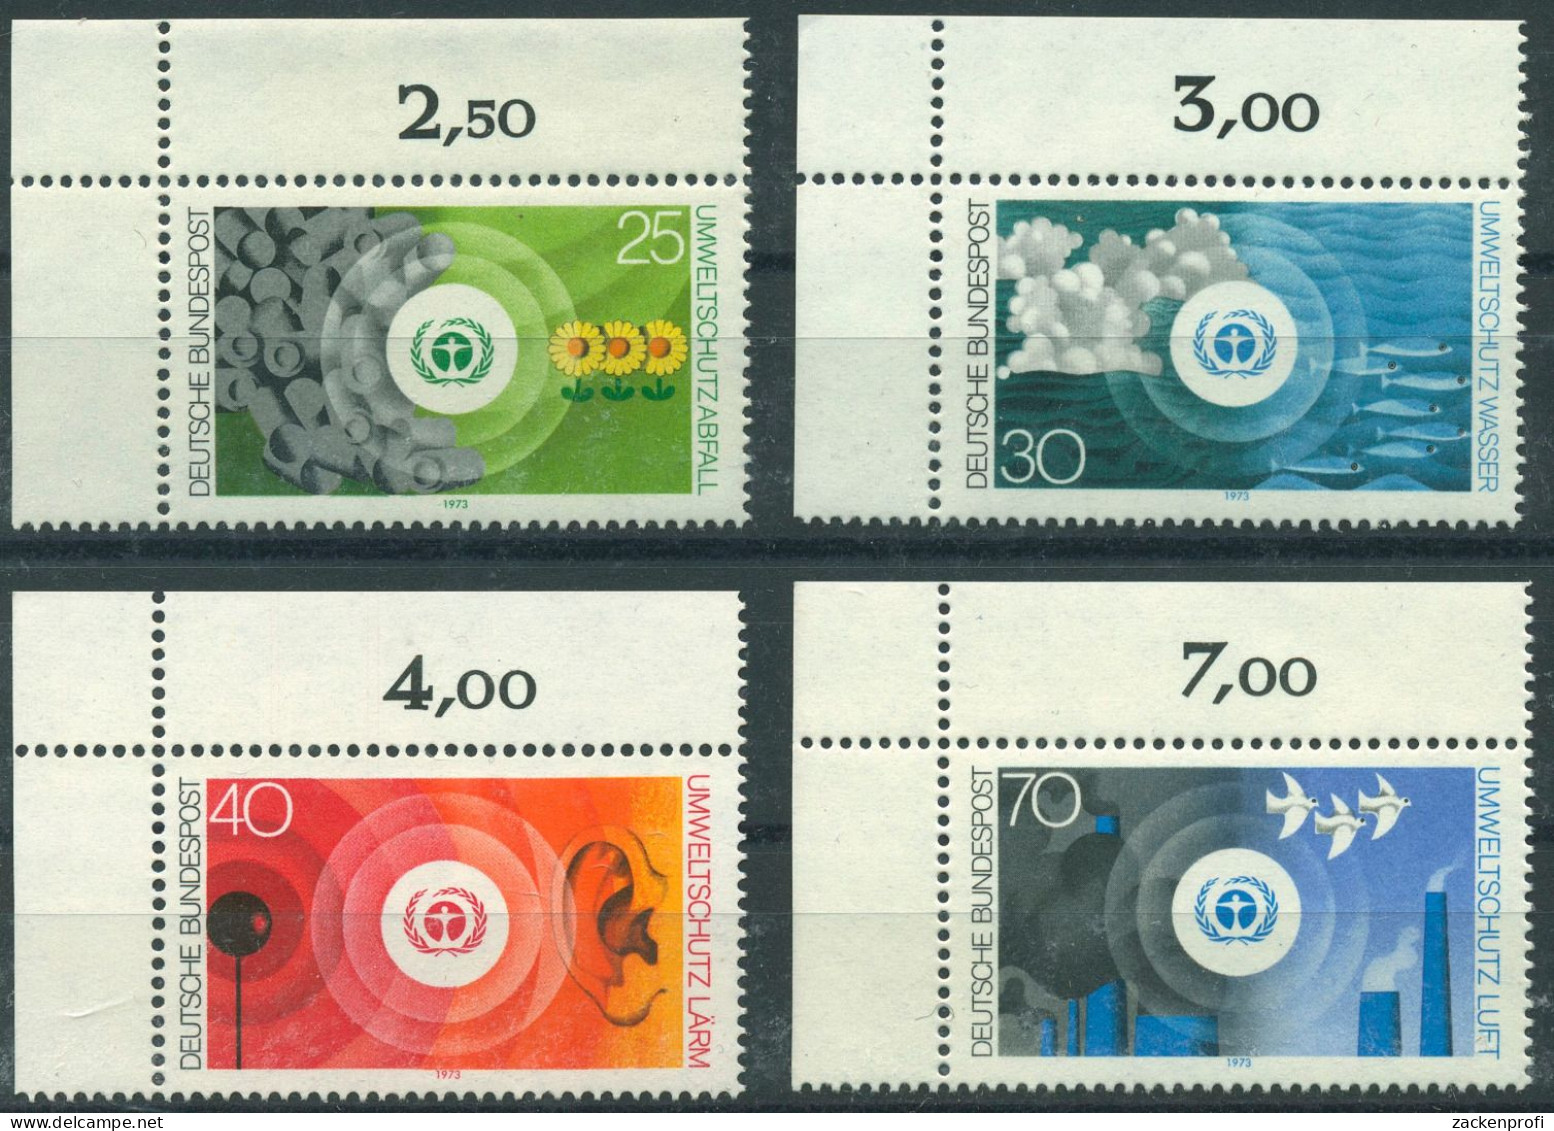 Bund 1973 Umweltschutz 774/77 Ecke 1 Oben Links Postfrisch (E331) - Unused Stamps